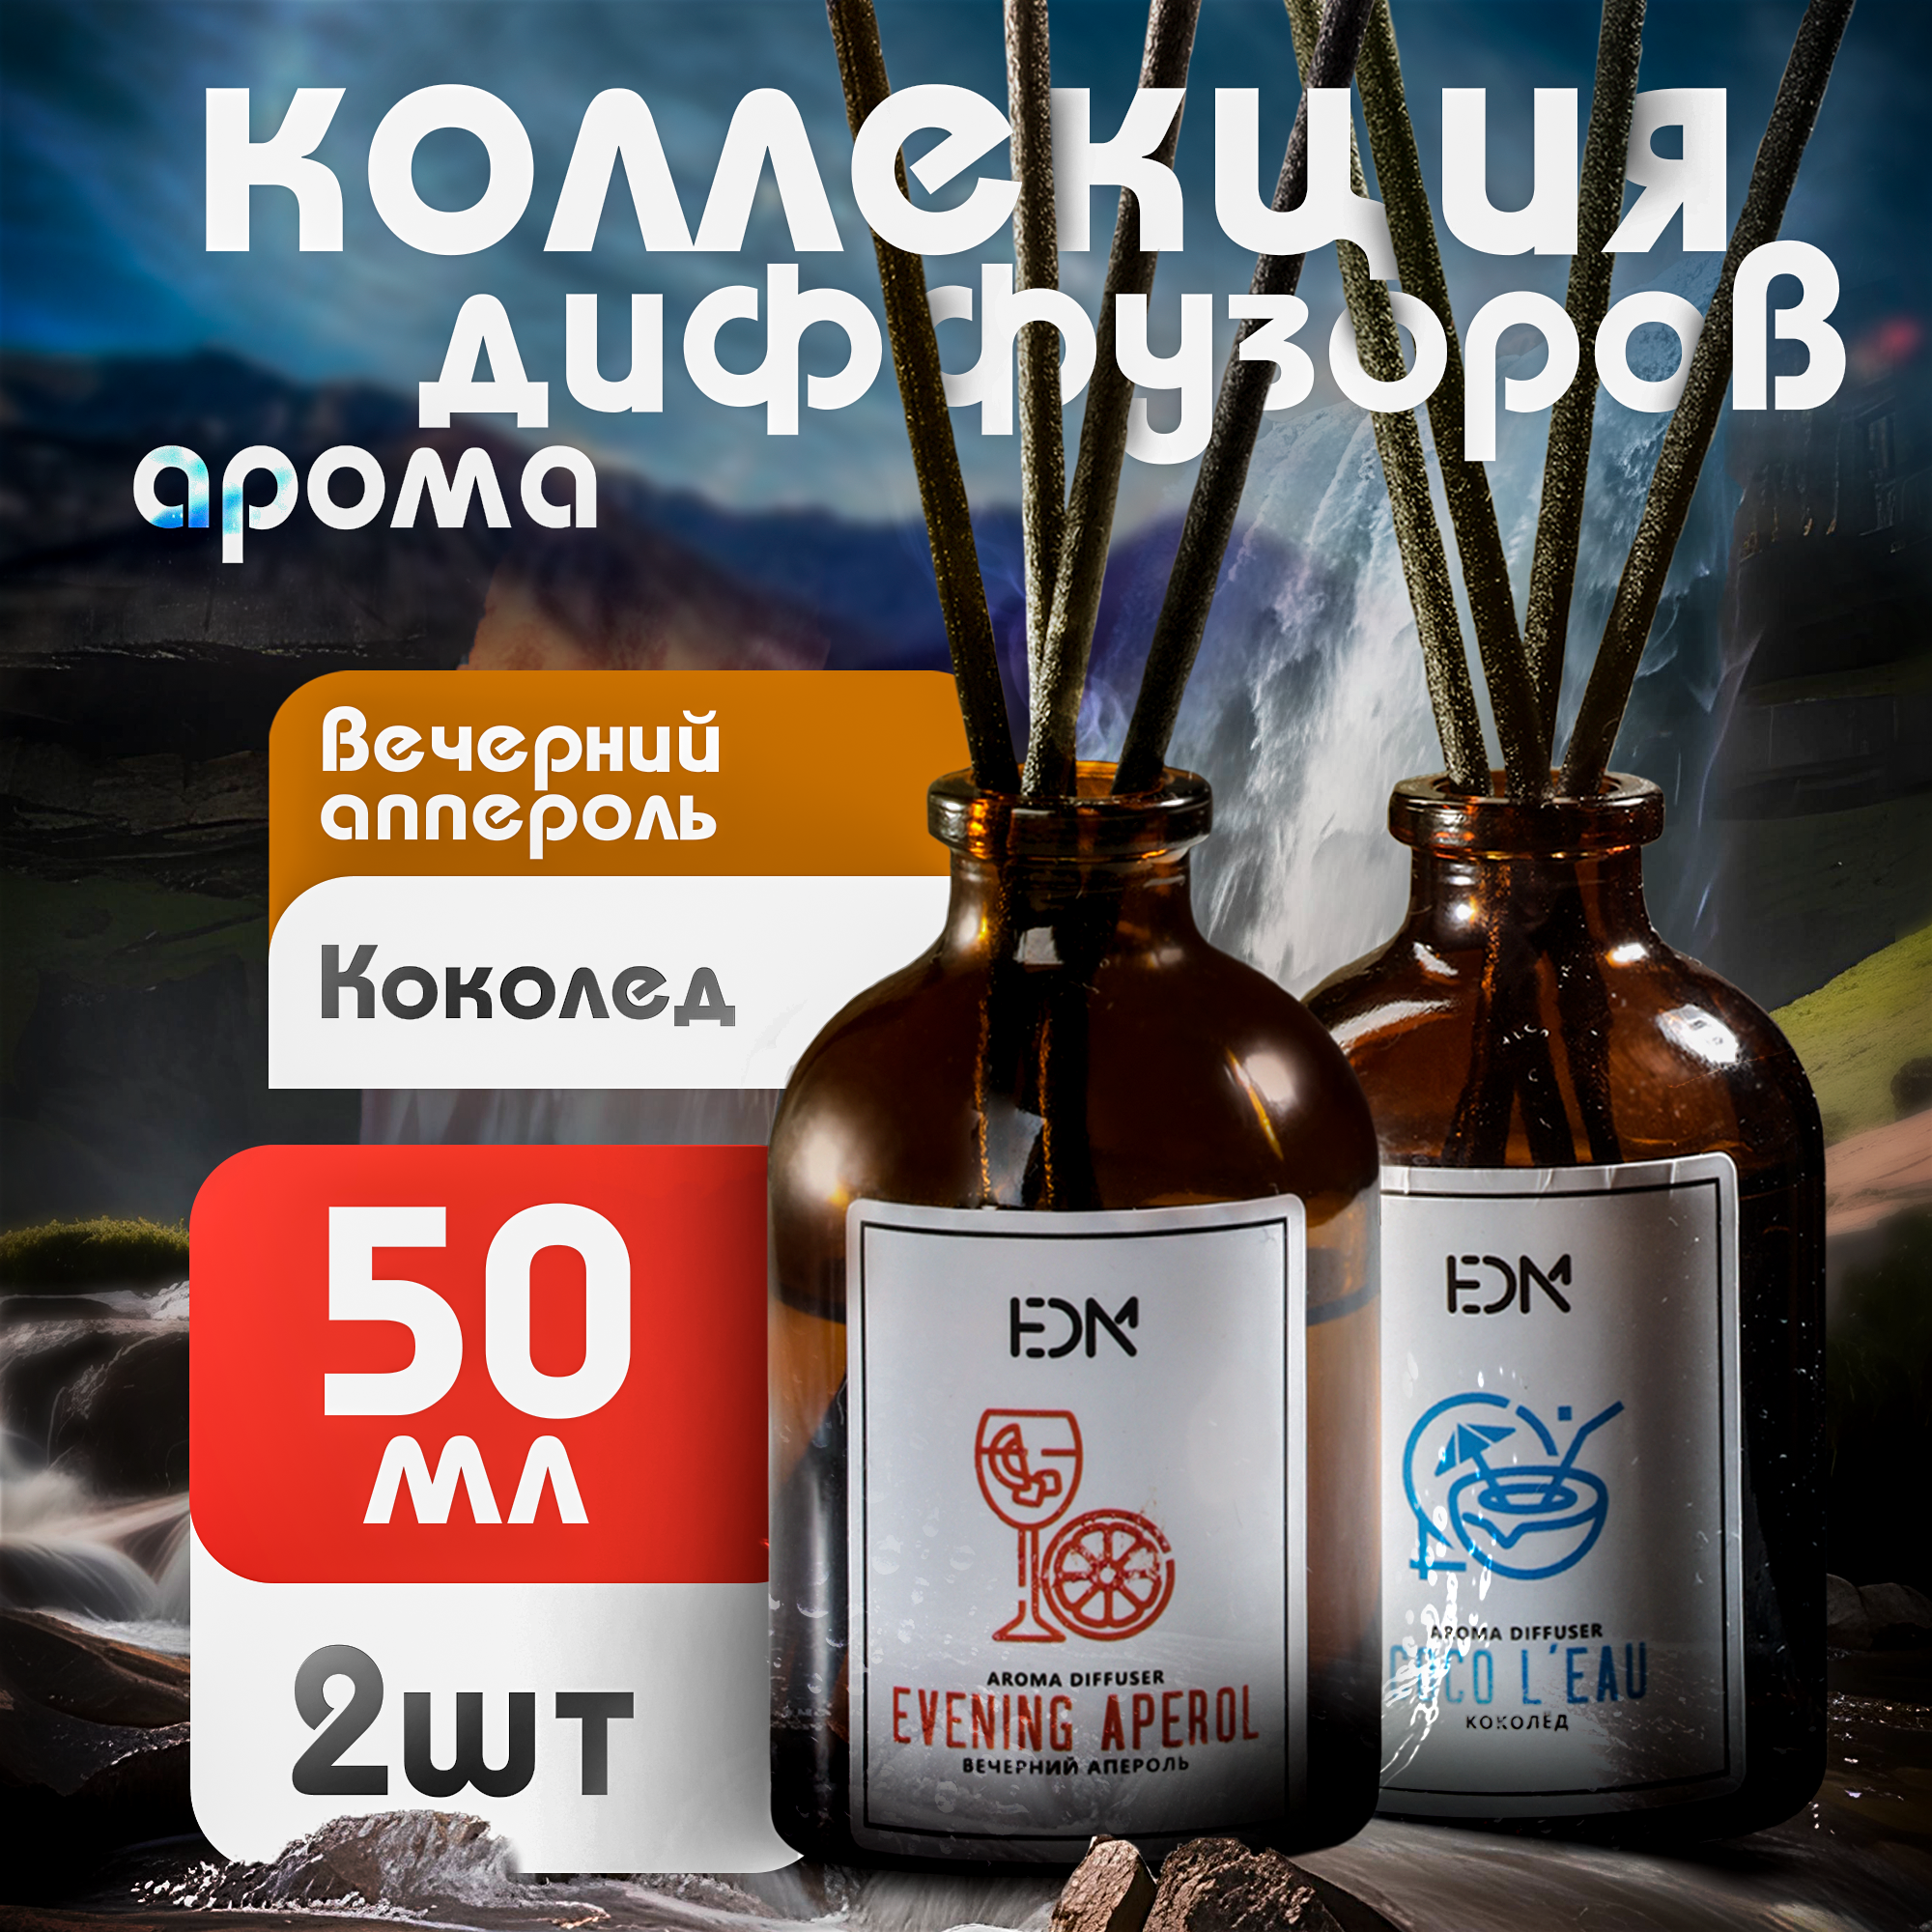 Набор ароматических диффузоров для дома "Коколёд" и "Вечерний апероль", HEDONISME, 2 x 50 мл